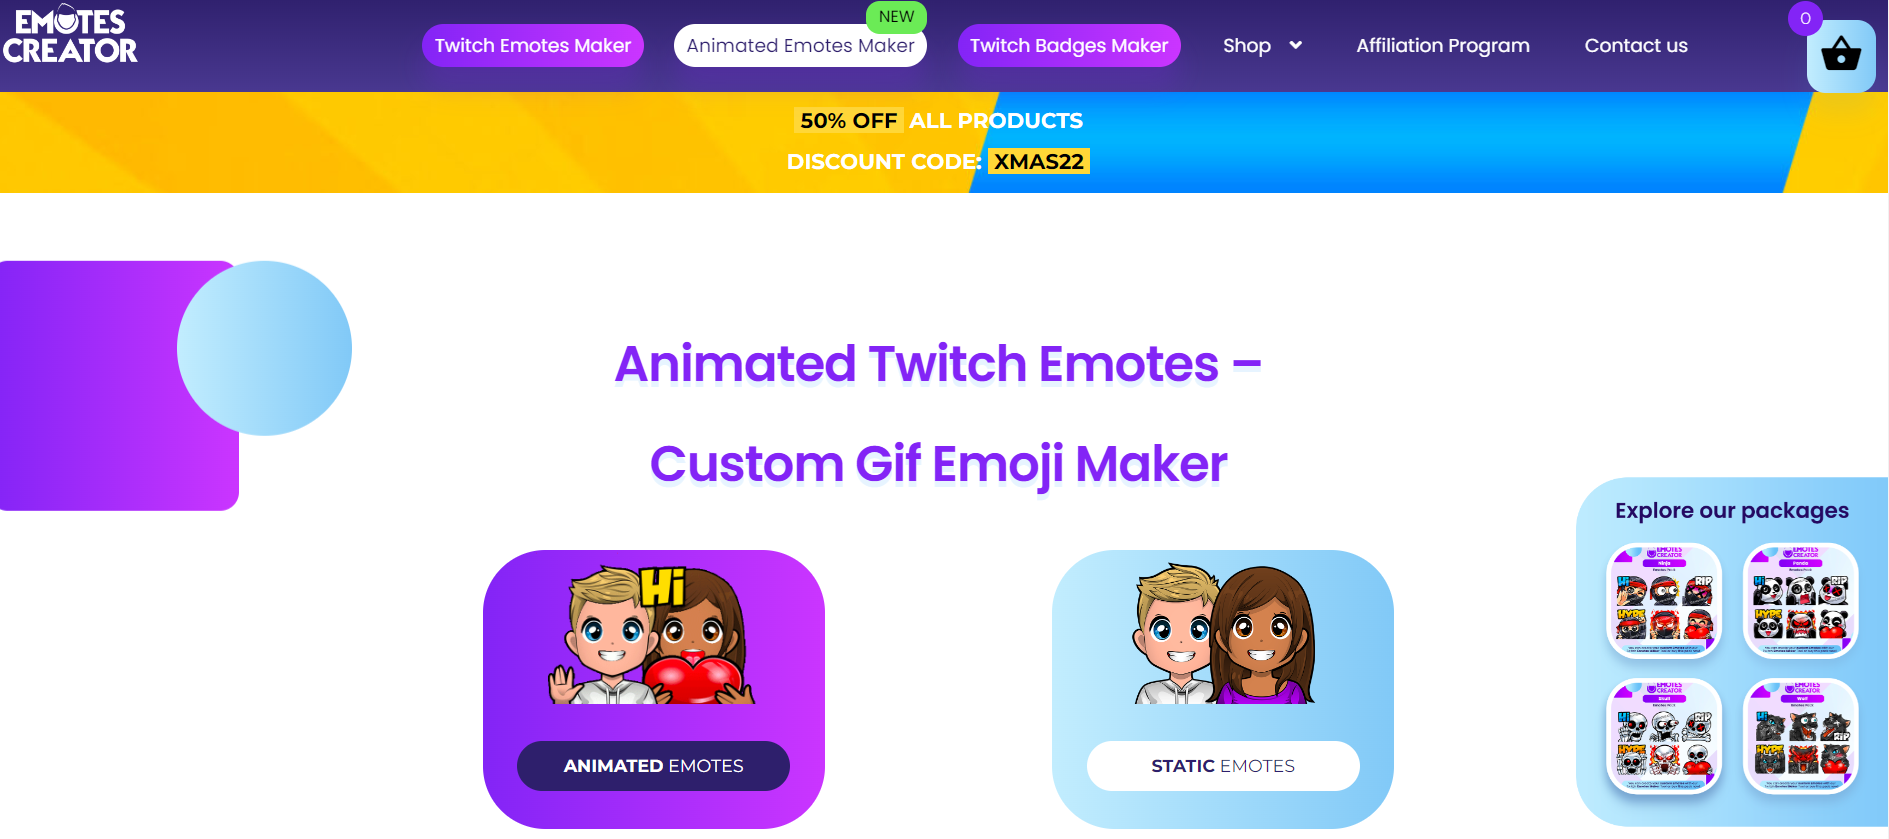 emotes creator